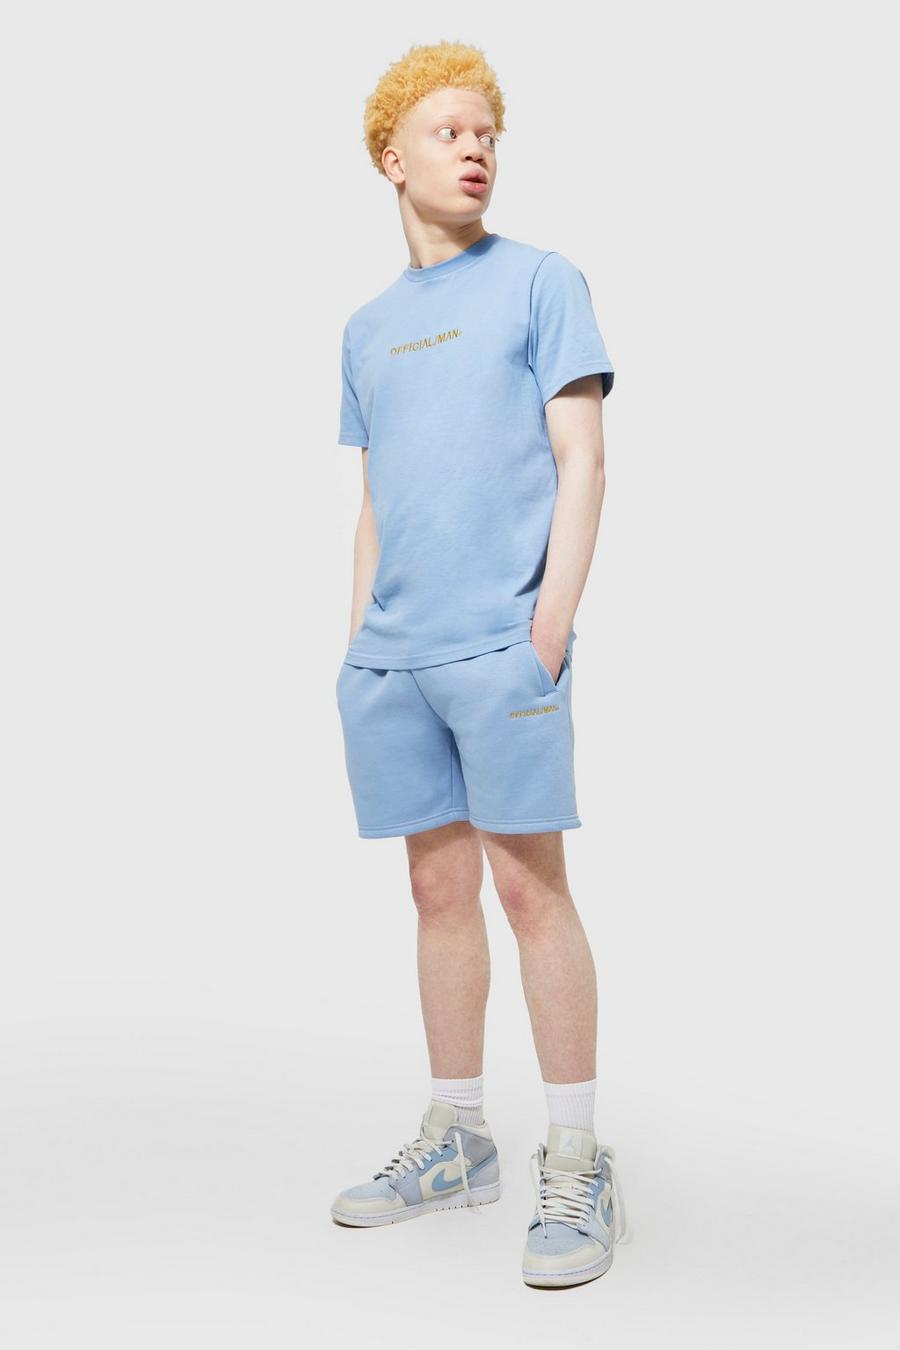 Light blue bleu Slim Fit Official Man T-shirt And Short Set